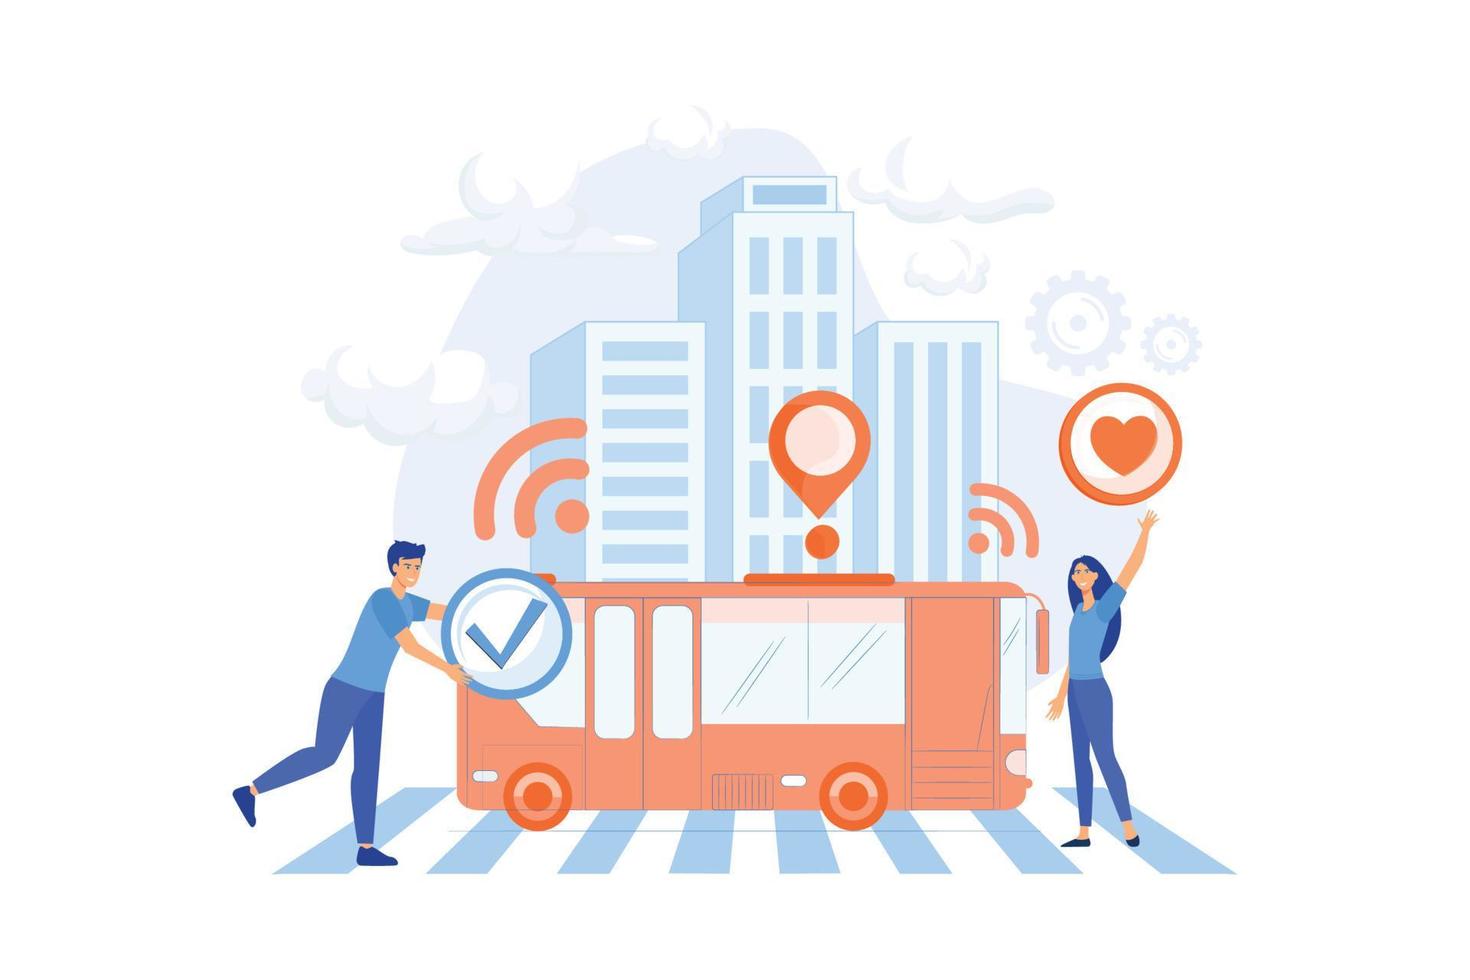 Passengers like and approve autonomos robotic driverless bus. Autonomous public transport, self-driving bus, urban transport services concept. vector